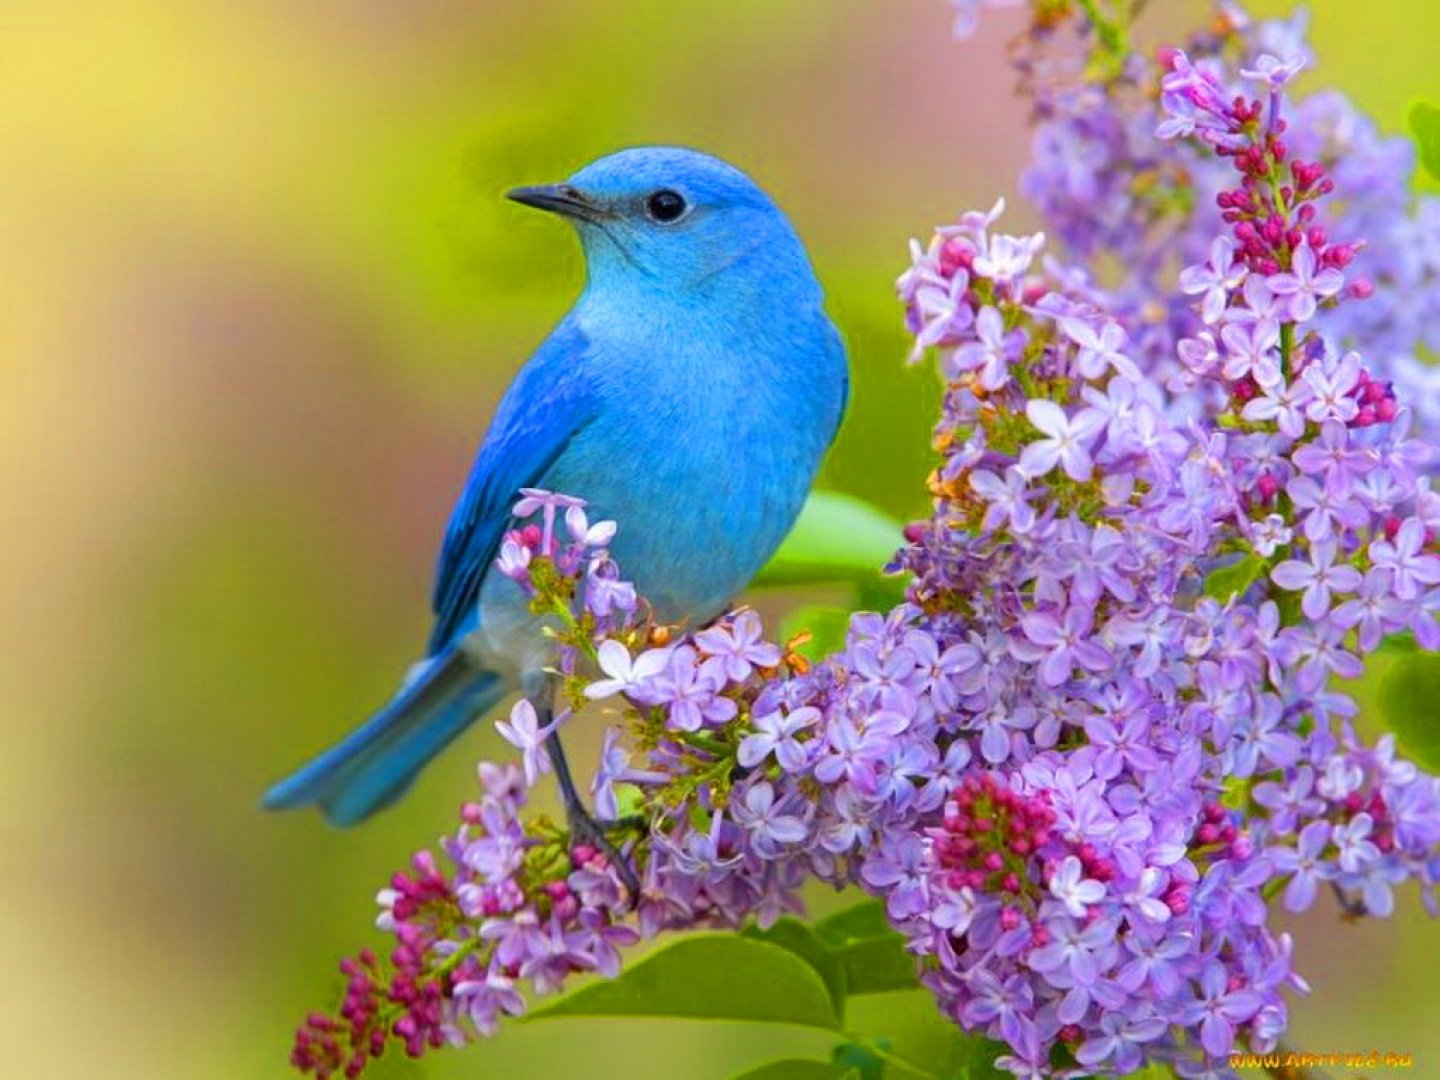 Fondos de Pantalla Animales Aves Pjaro azul Vista Completa